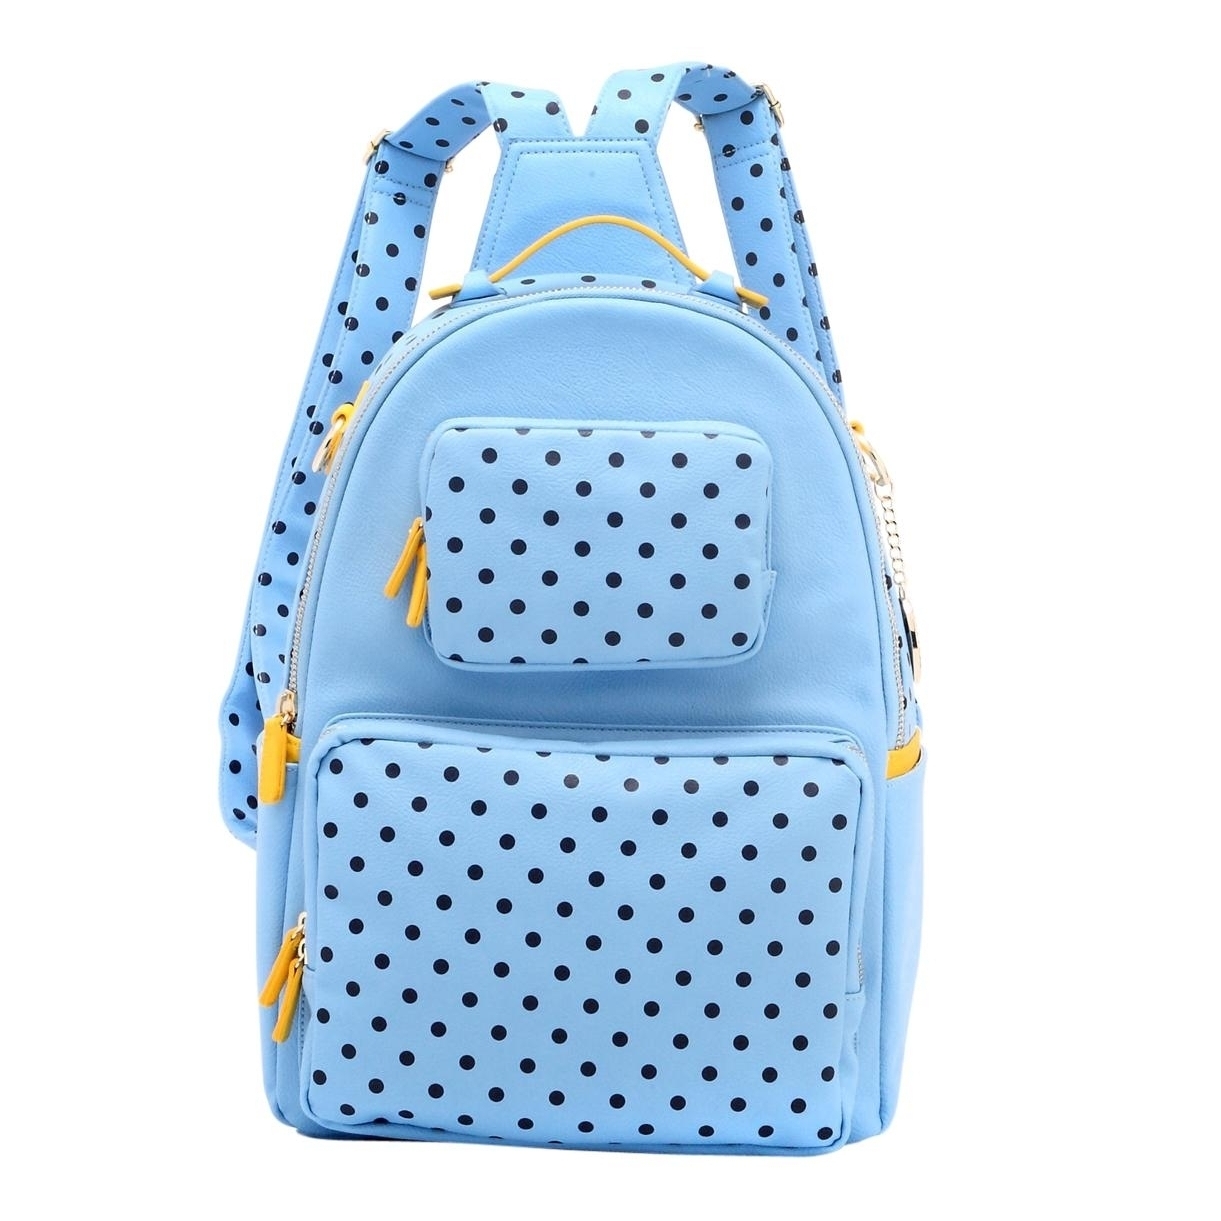 SCORE! Natalie Michelle Medium Polka Dot Designer Backpack - Light Blue, Navy Blue And Yellow Gold